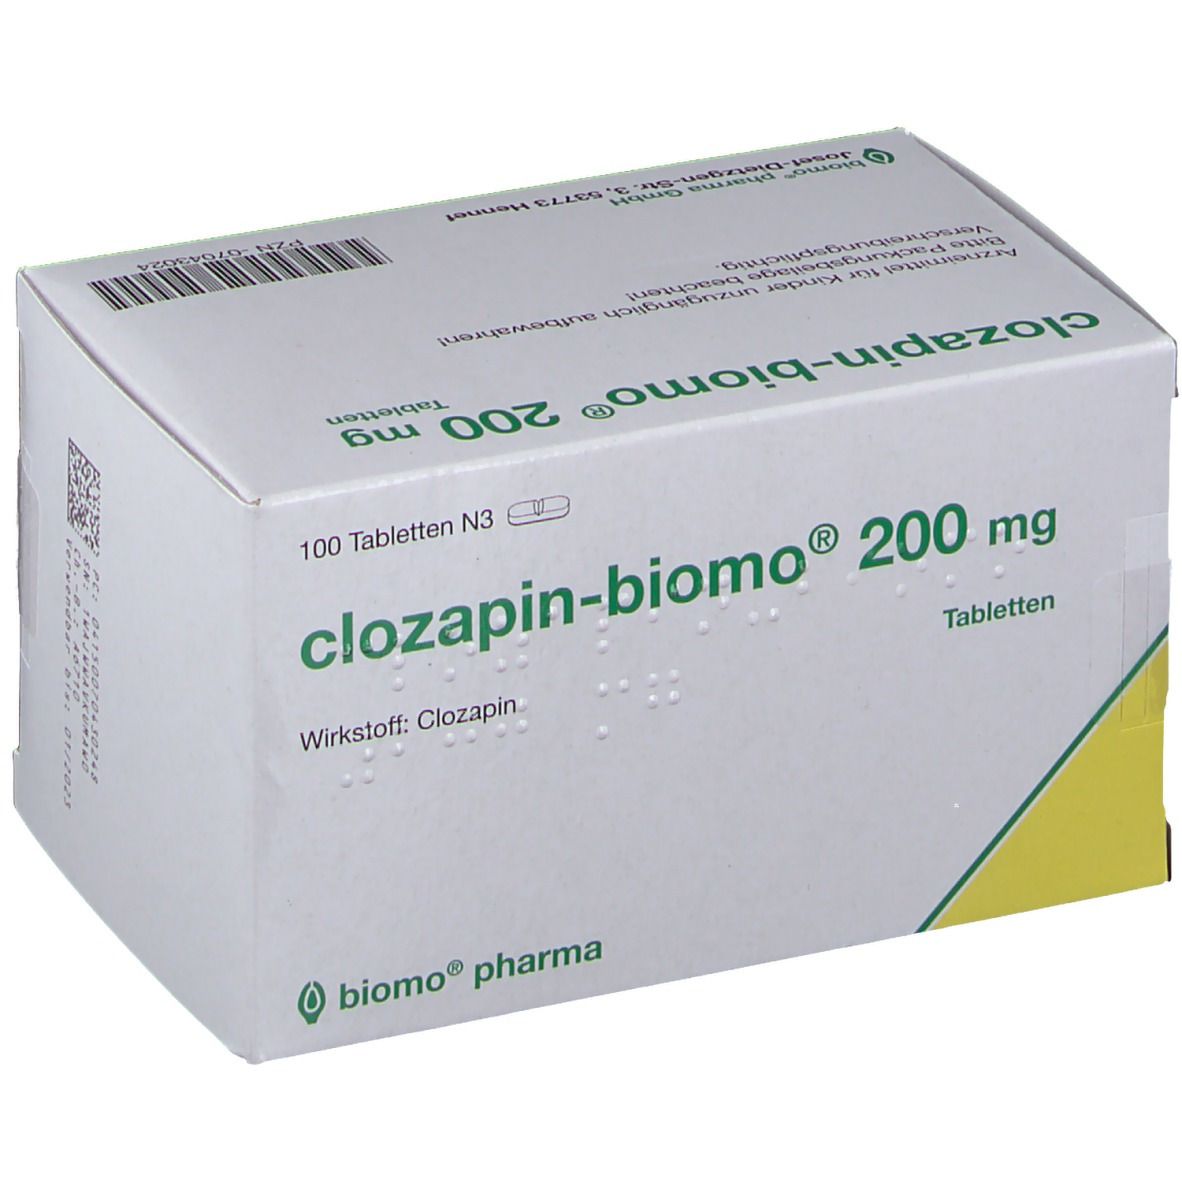 clozapin-biomo® 200 mg